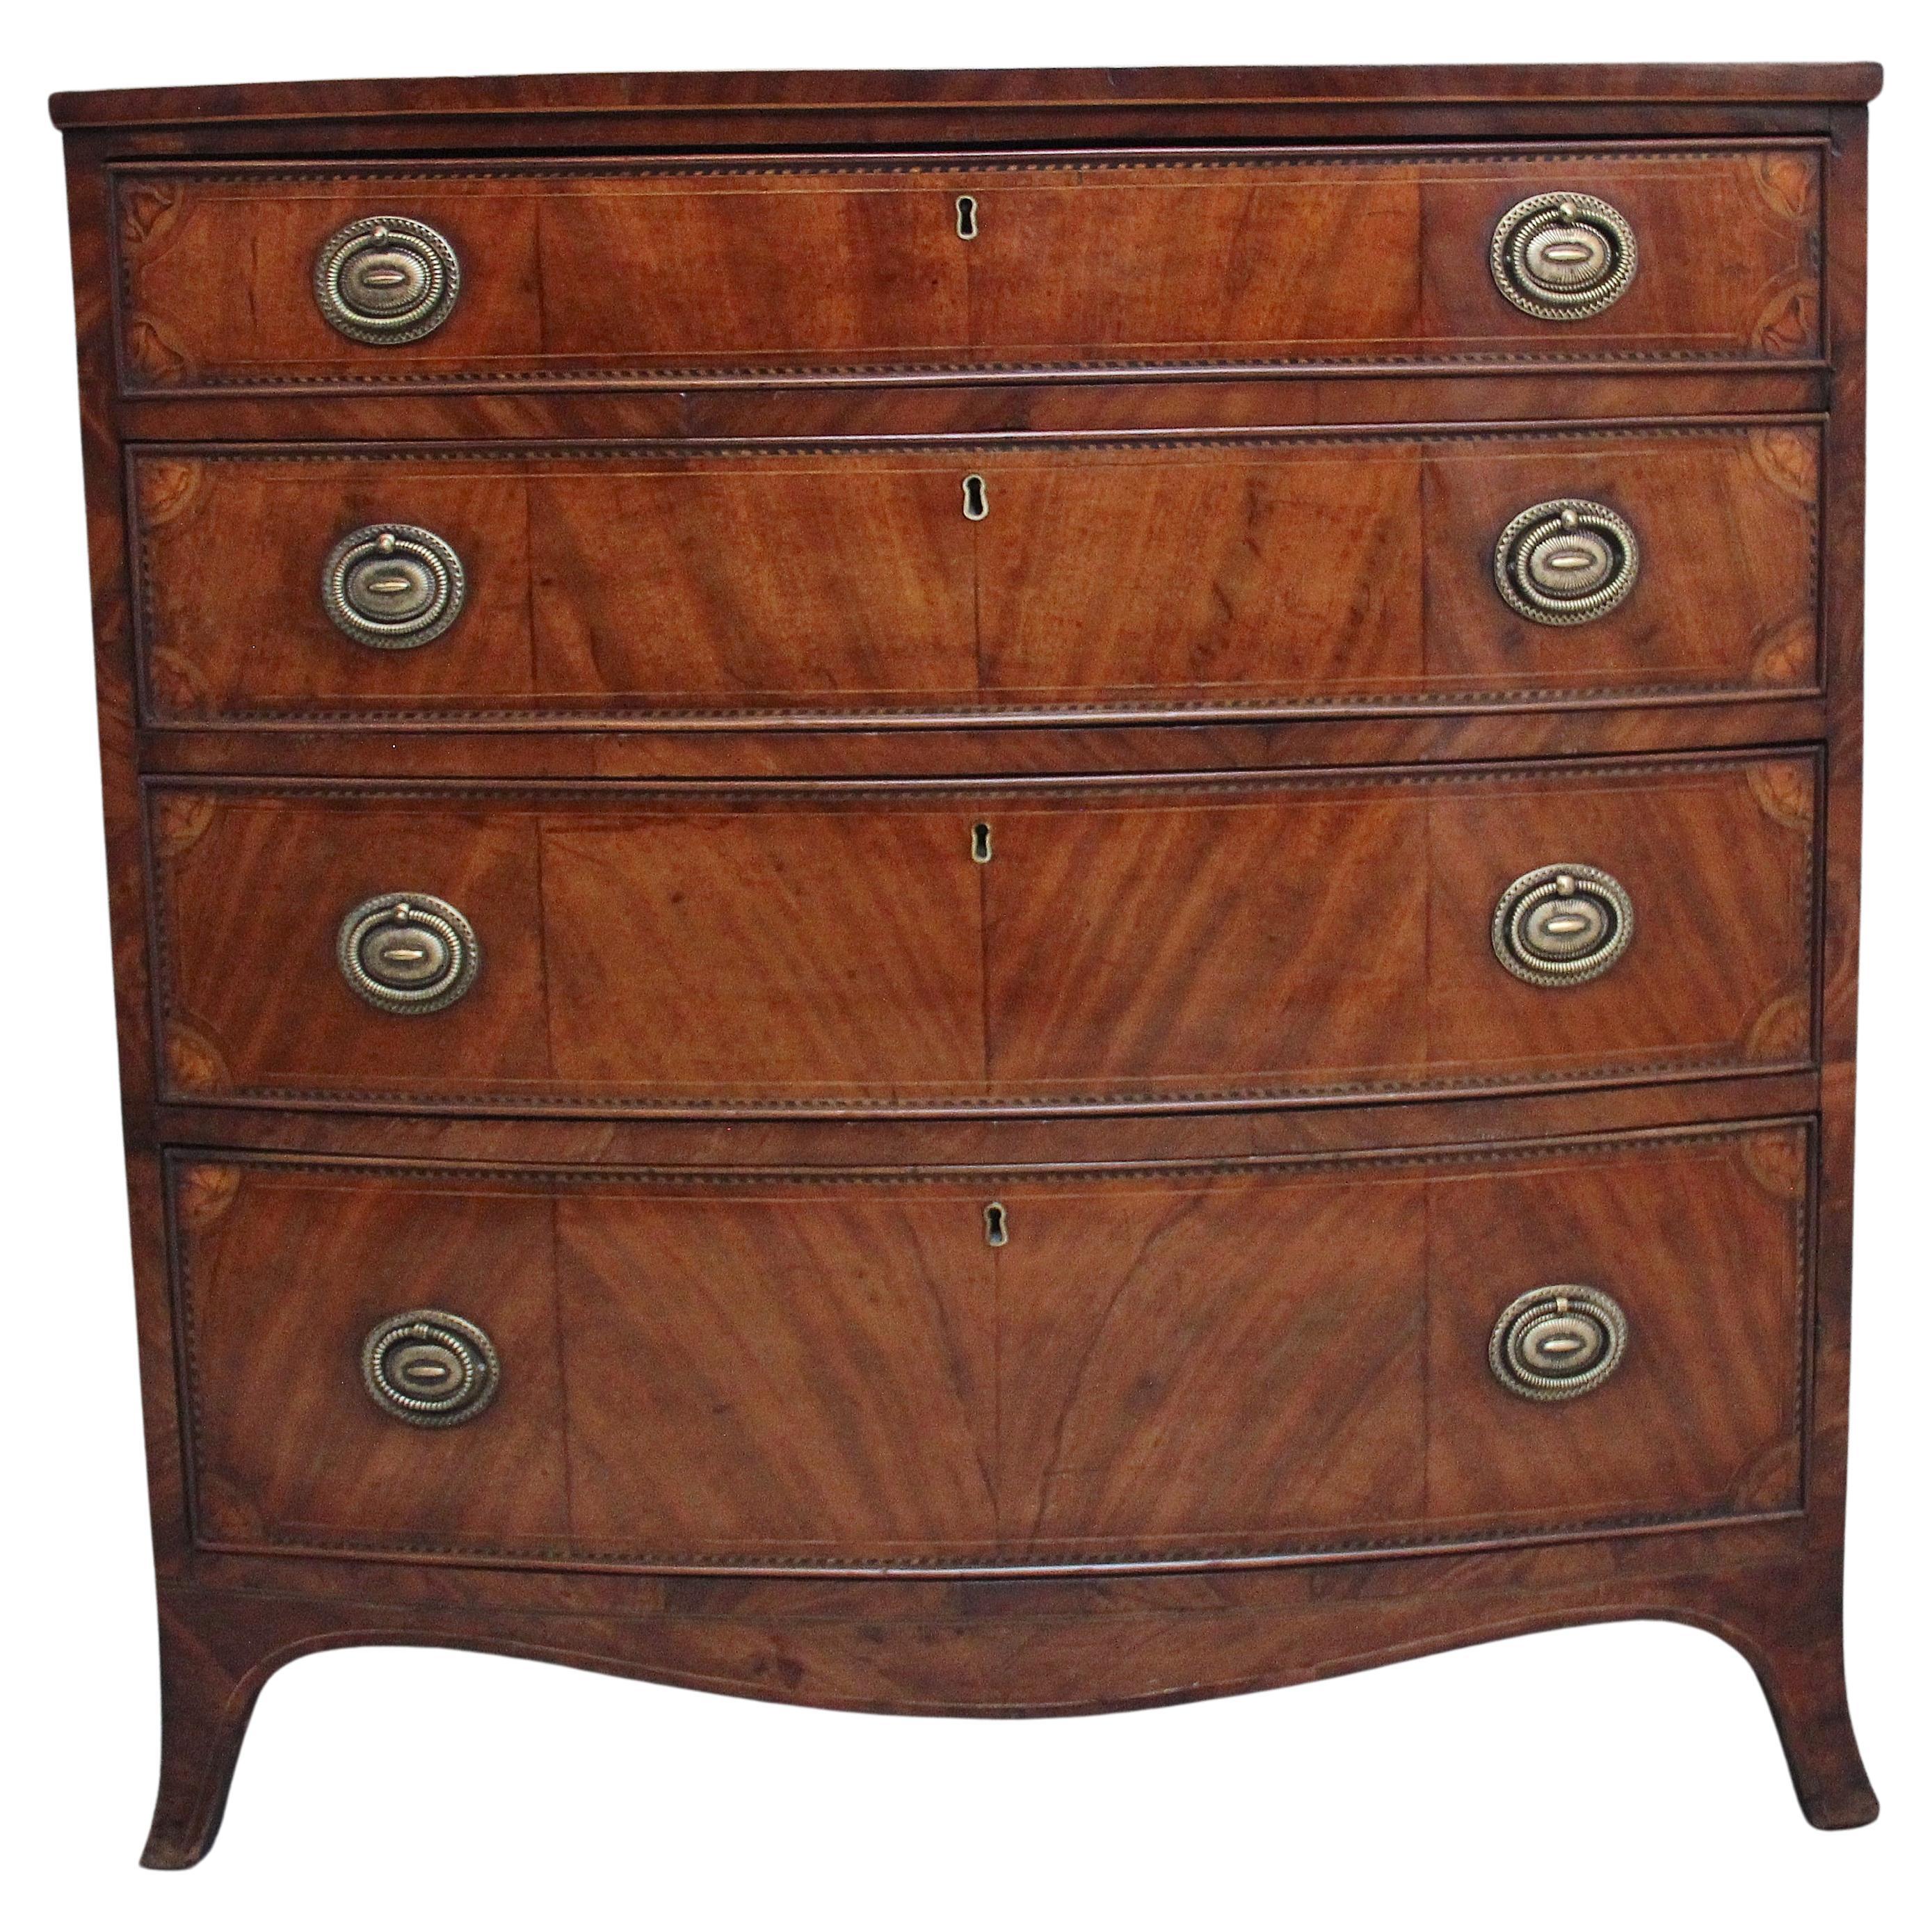 18th Century inlaid mahogany chest